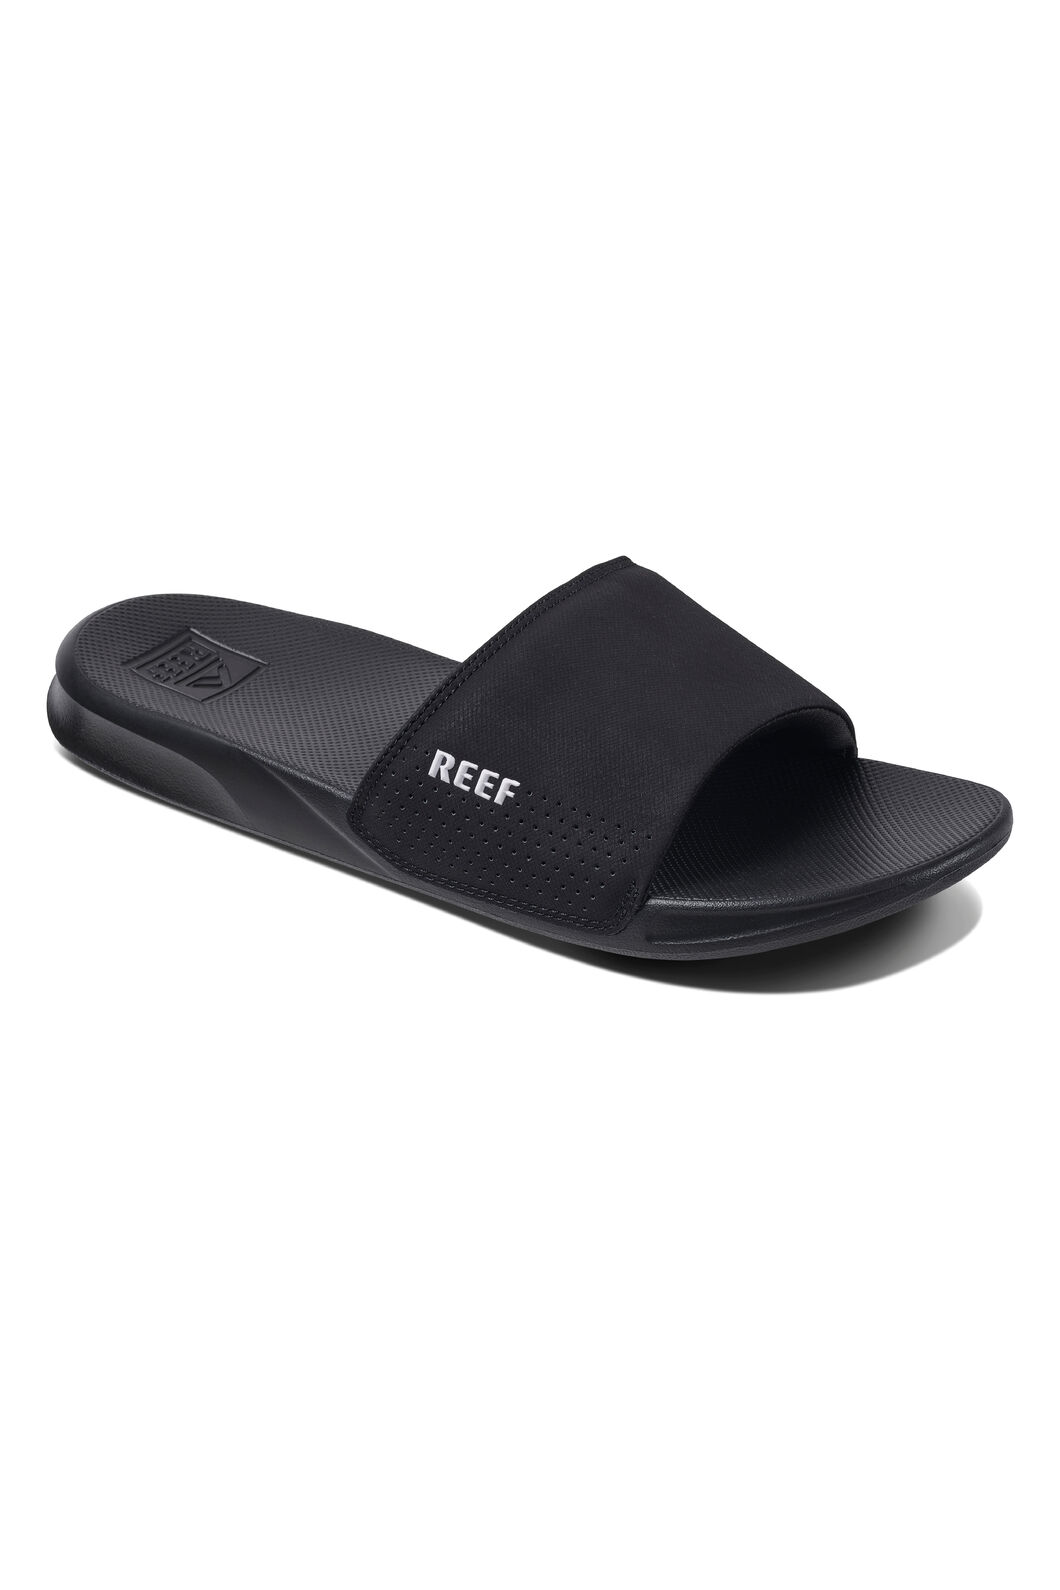 REEF® One Men's Slides, Black, hi-res